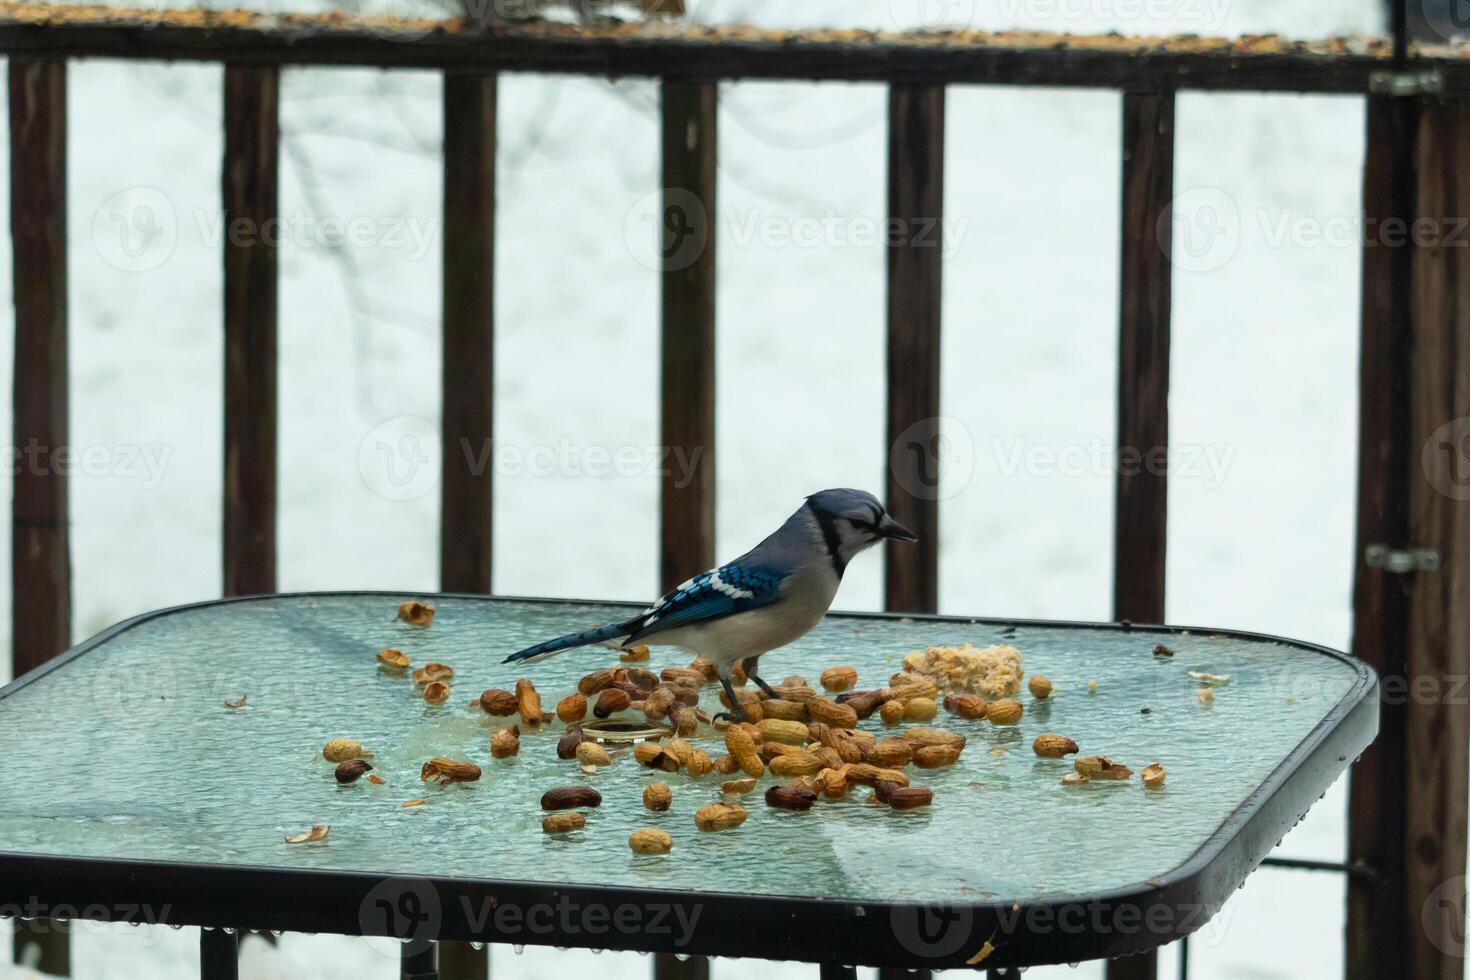 isto lindo azul Jay veio para a vidro mesa para alguns Comida. a bonita pássaro é cercar de amendoim. isto é tal uma frio tonificado imagem. neve em a terra e azul cores todos em volta. foto